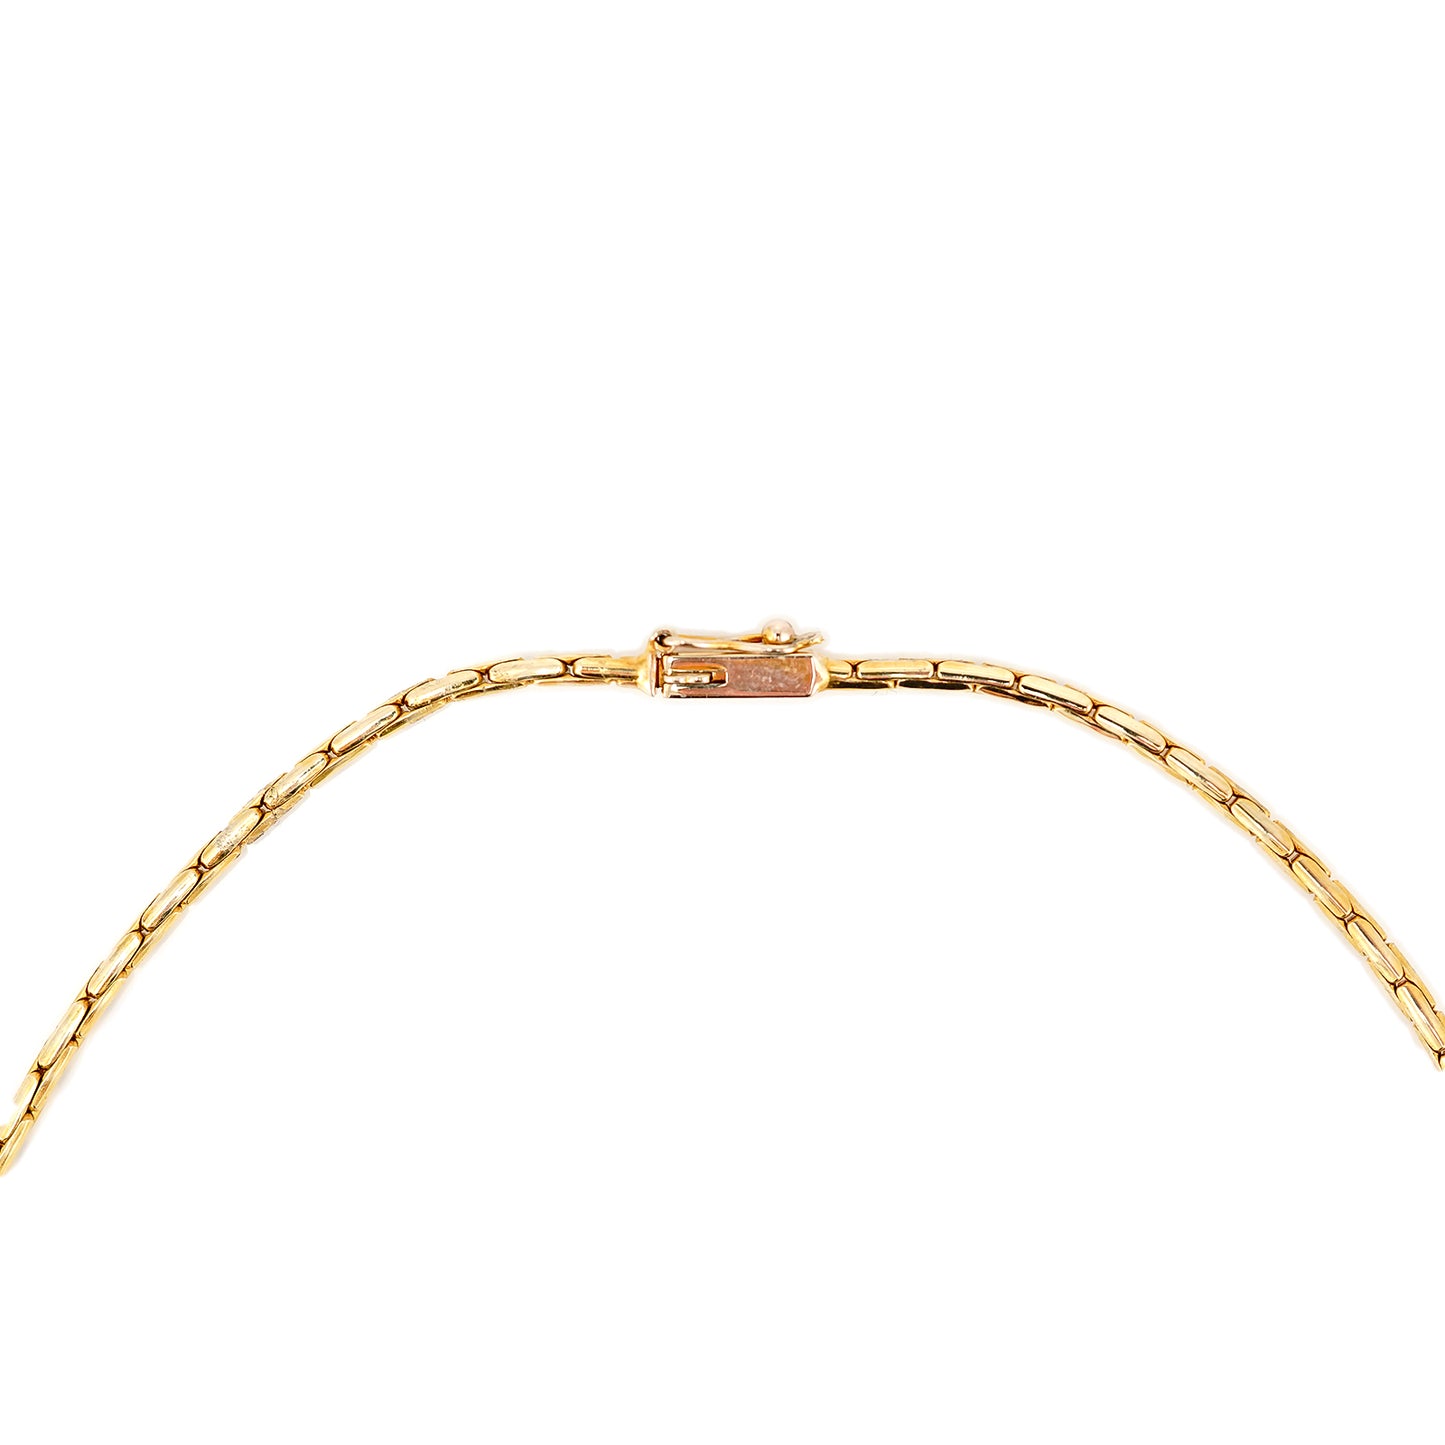 Halskette Damen Kette Vintage Design Collier Gold 14K585 mit Perlen Diamanten 42cm